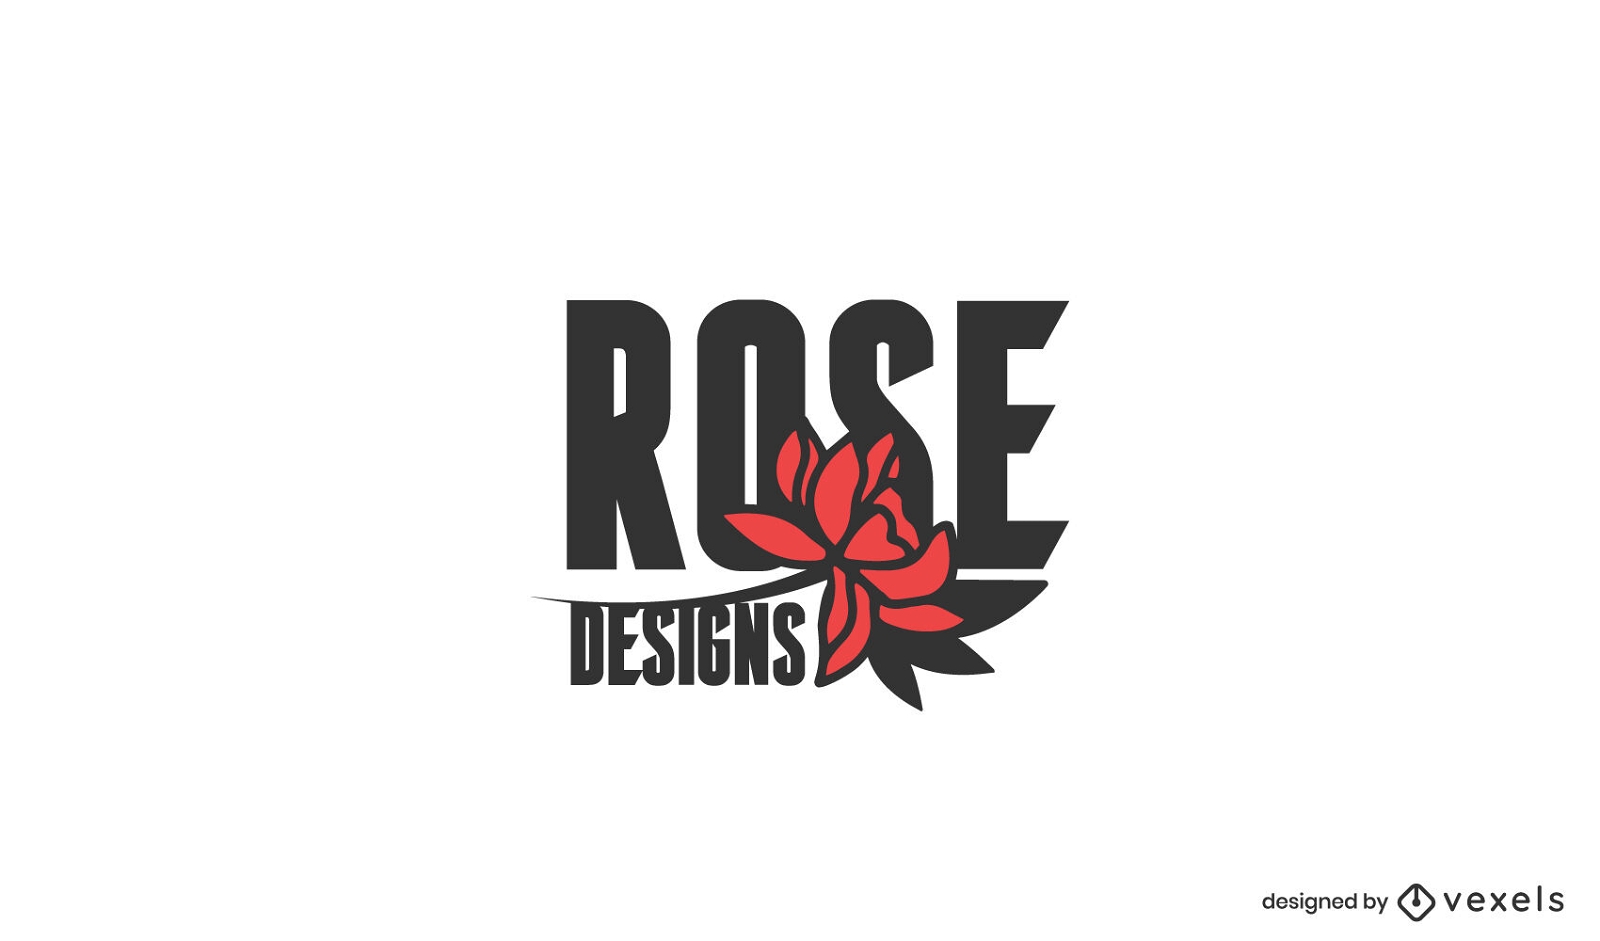 Diseño de logotipo de diseños de rosas.